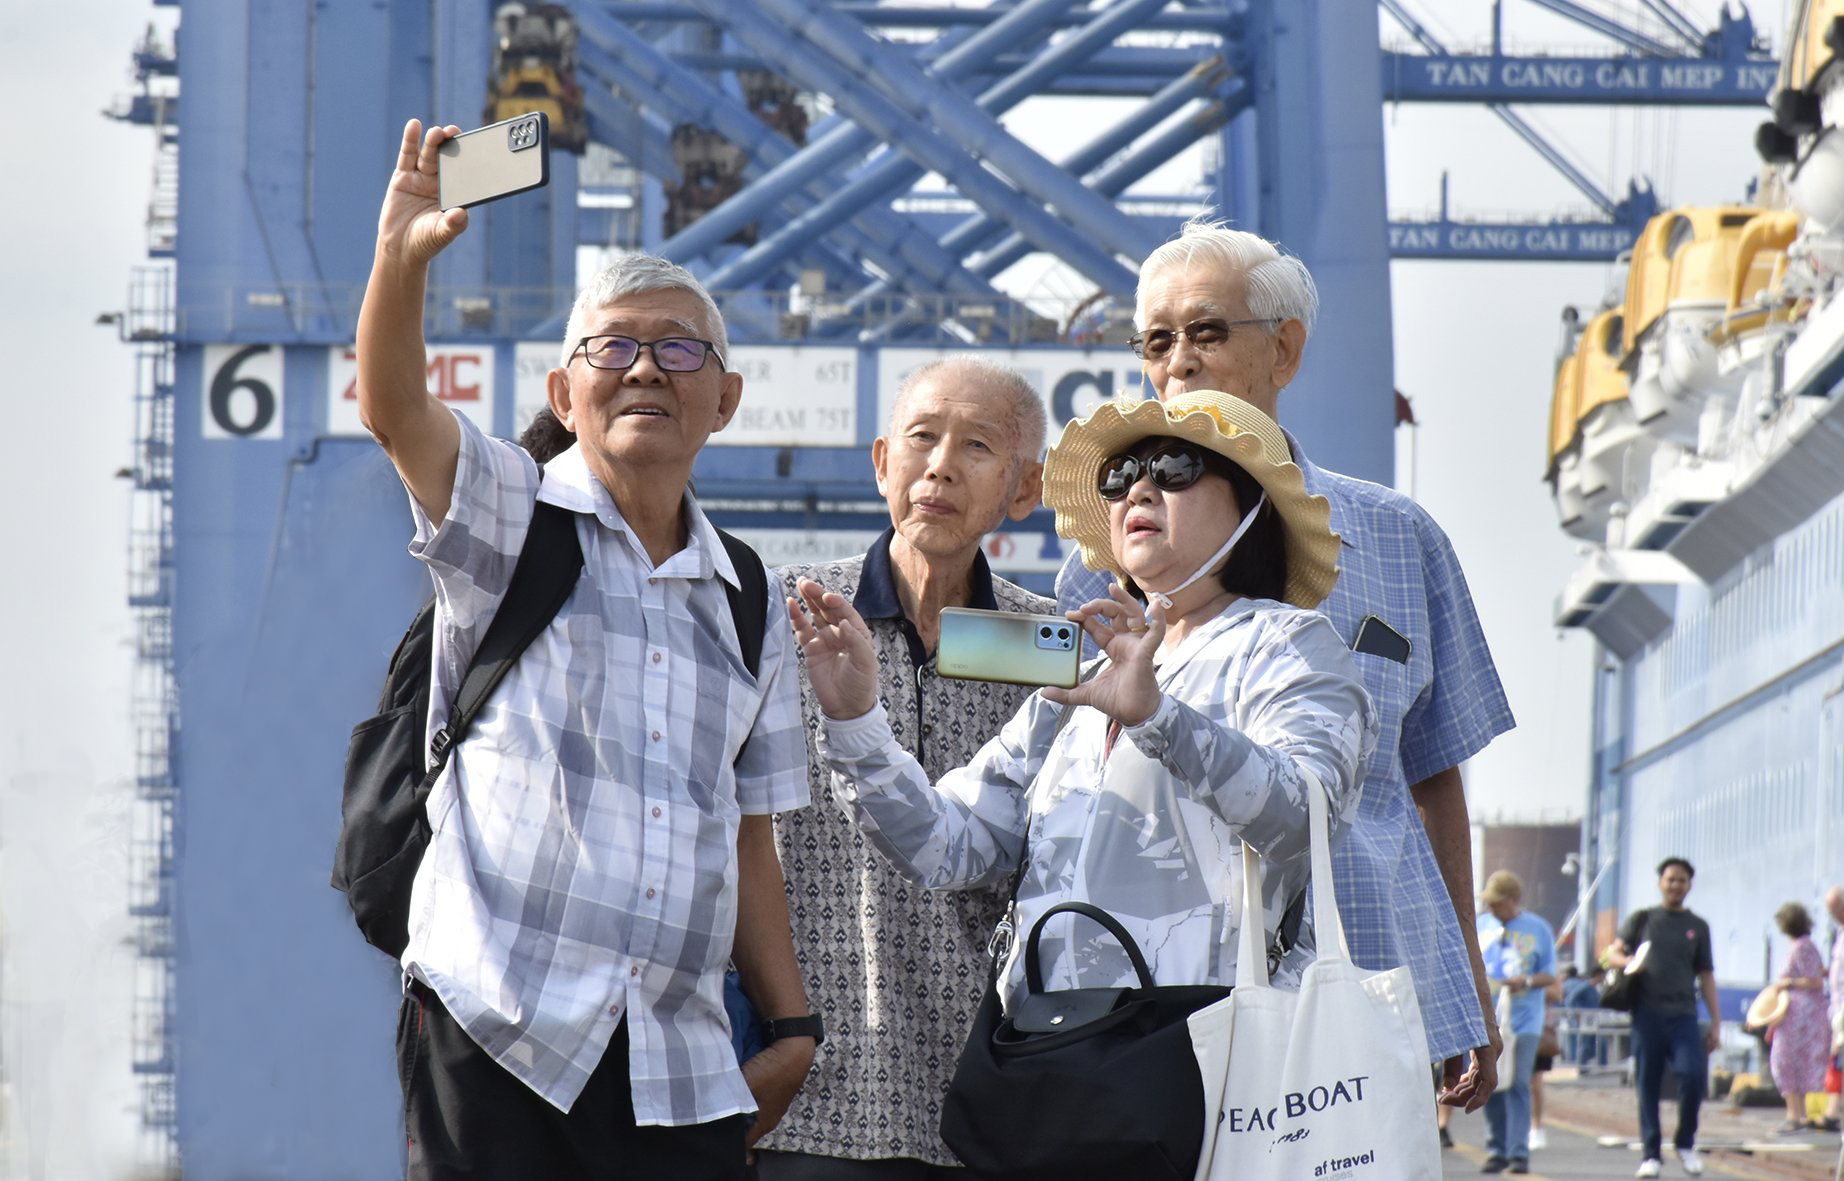 Siêu tàu chở gần 4.500 khách quốc tế đến Bà Rịa-Vũng Tàu